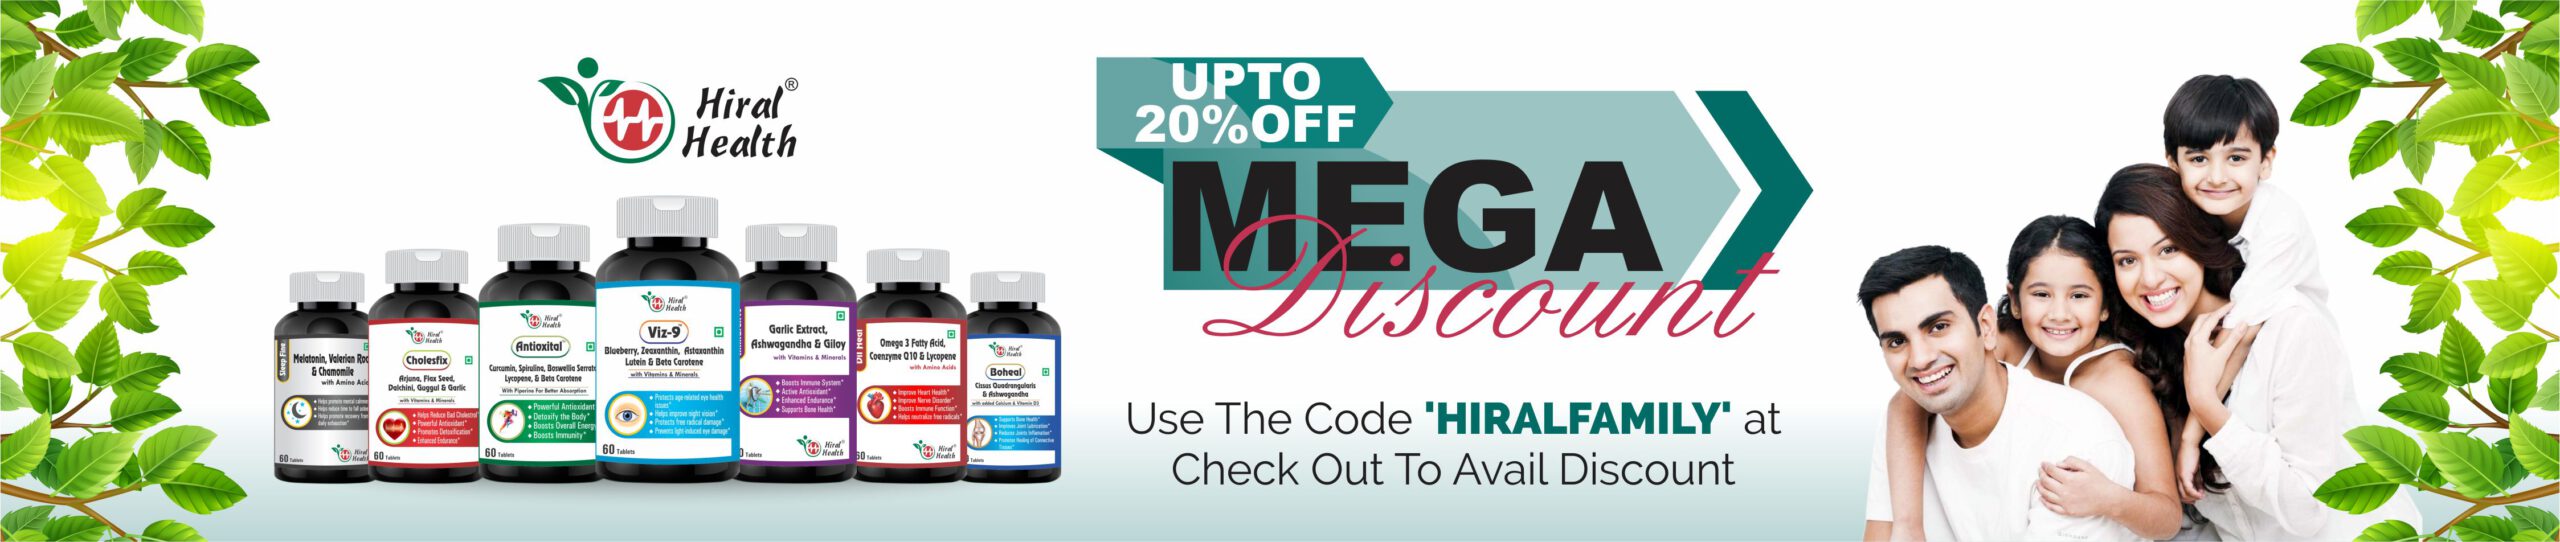 hiral_health_mega_offer_20%